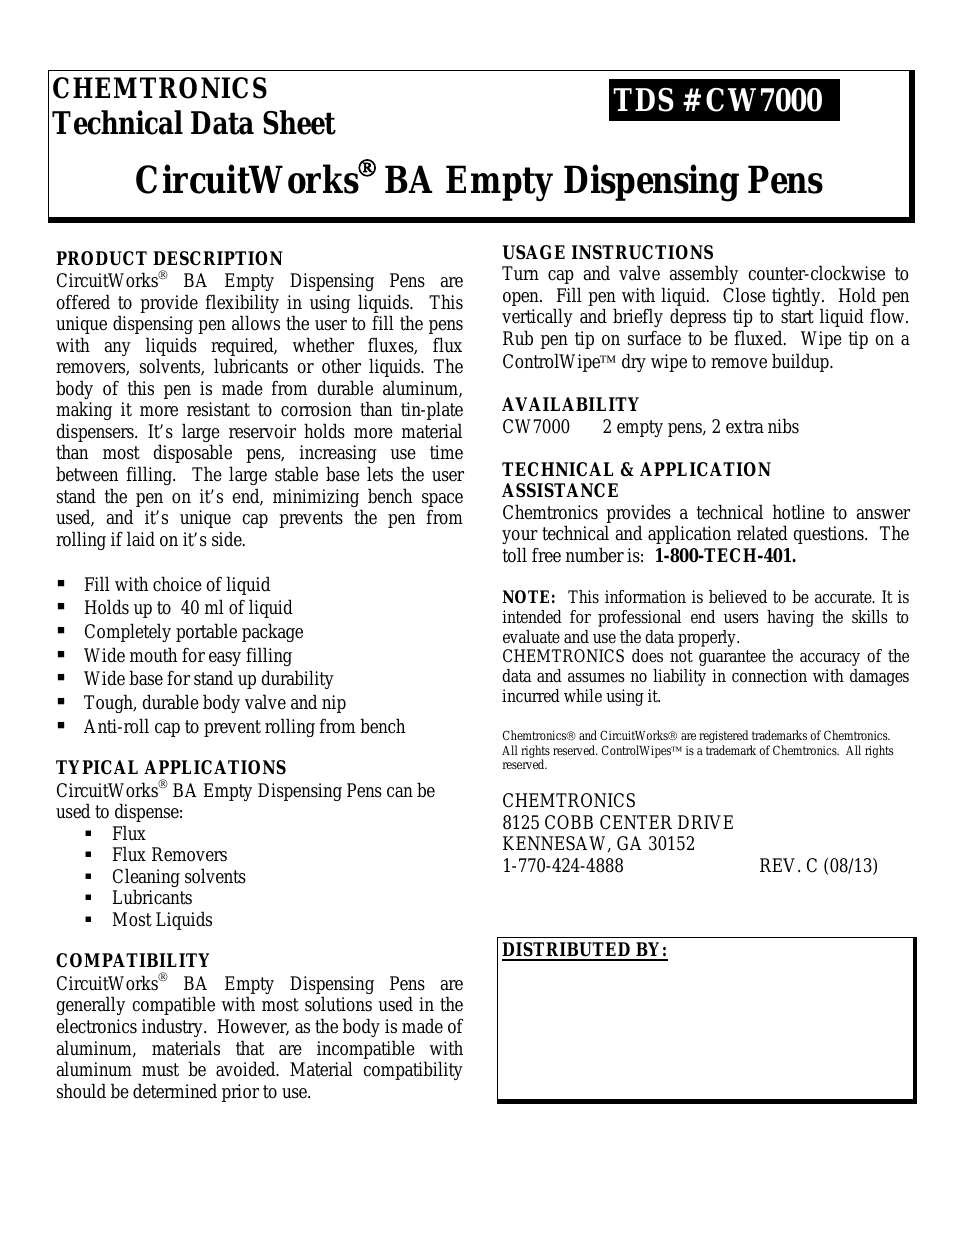 CircuitWorks® BA Dispensing Pens CW7000